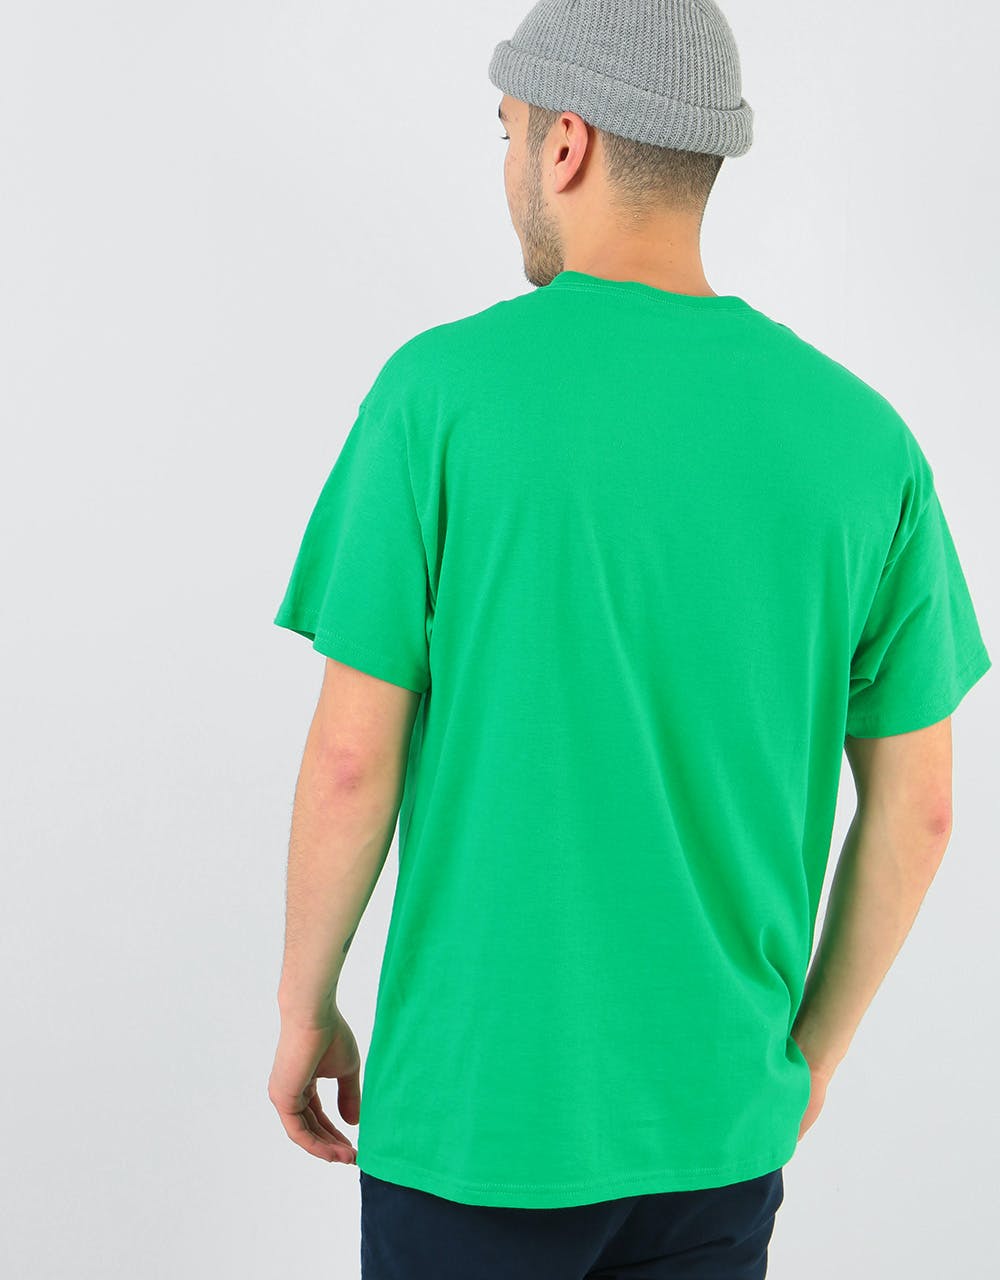 Manor Go Home T-Shirt - Irish Green